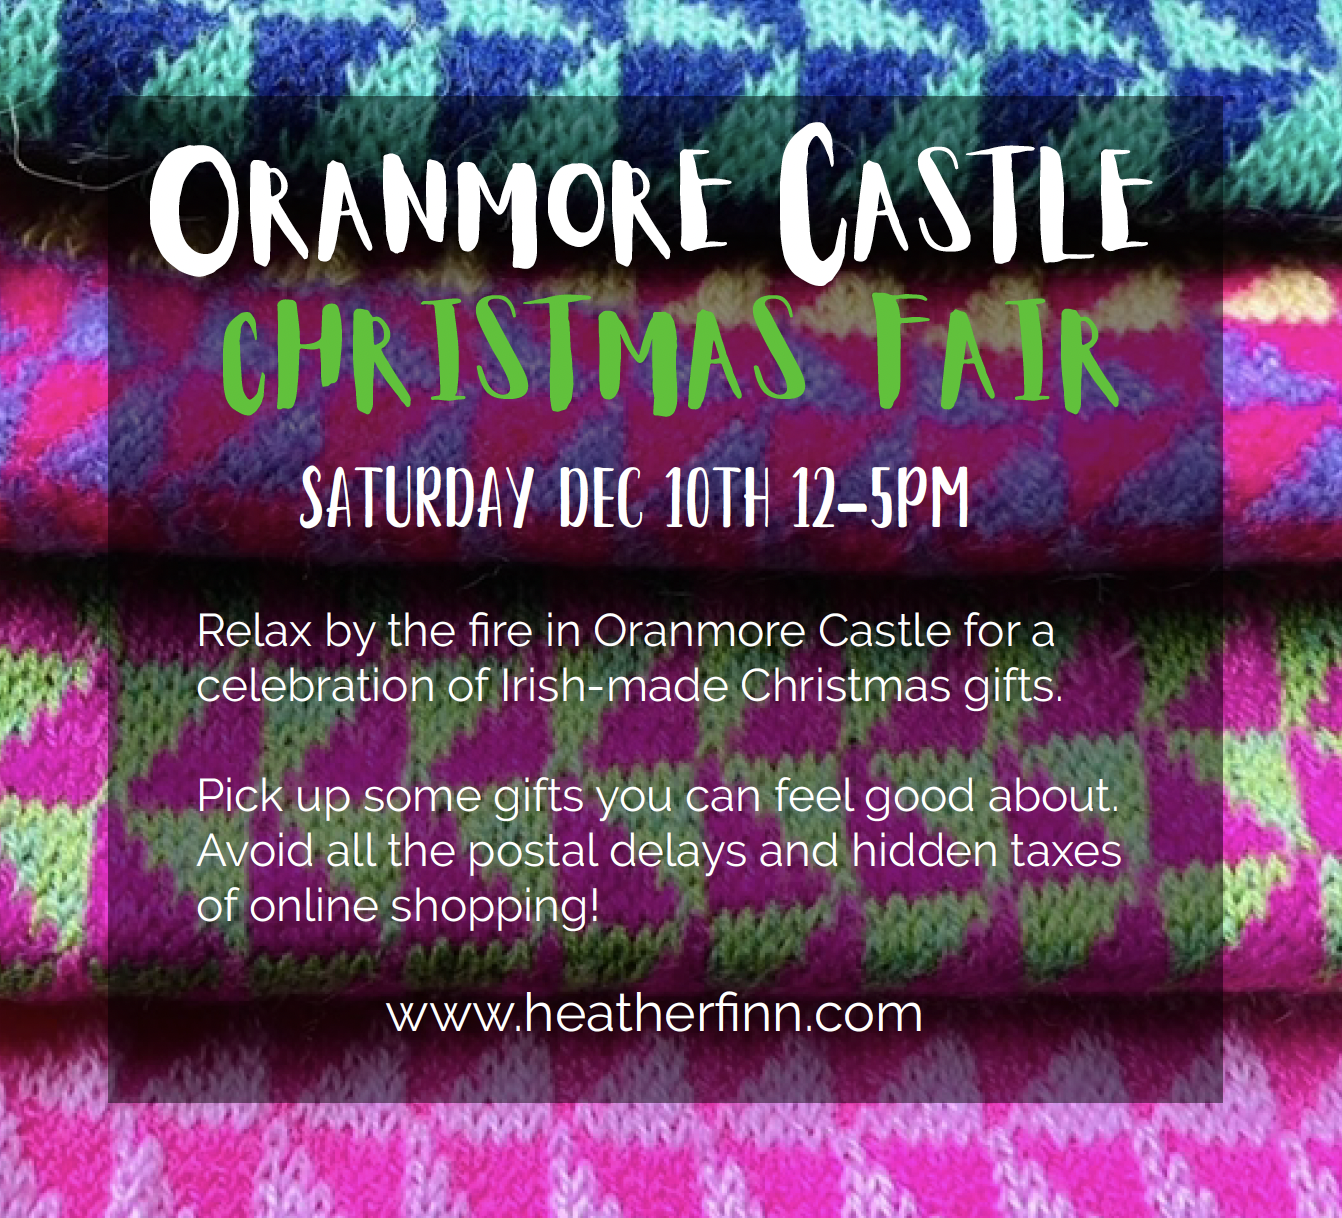 Oranmore Castle Christmas Fair